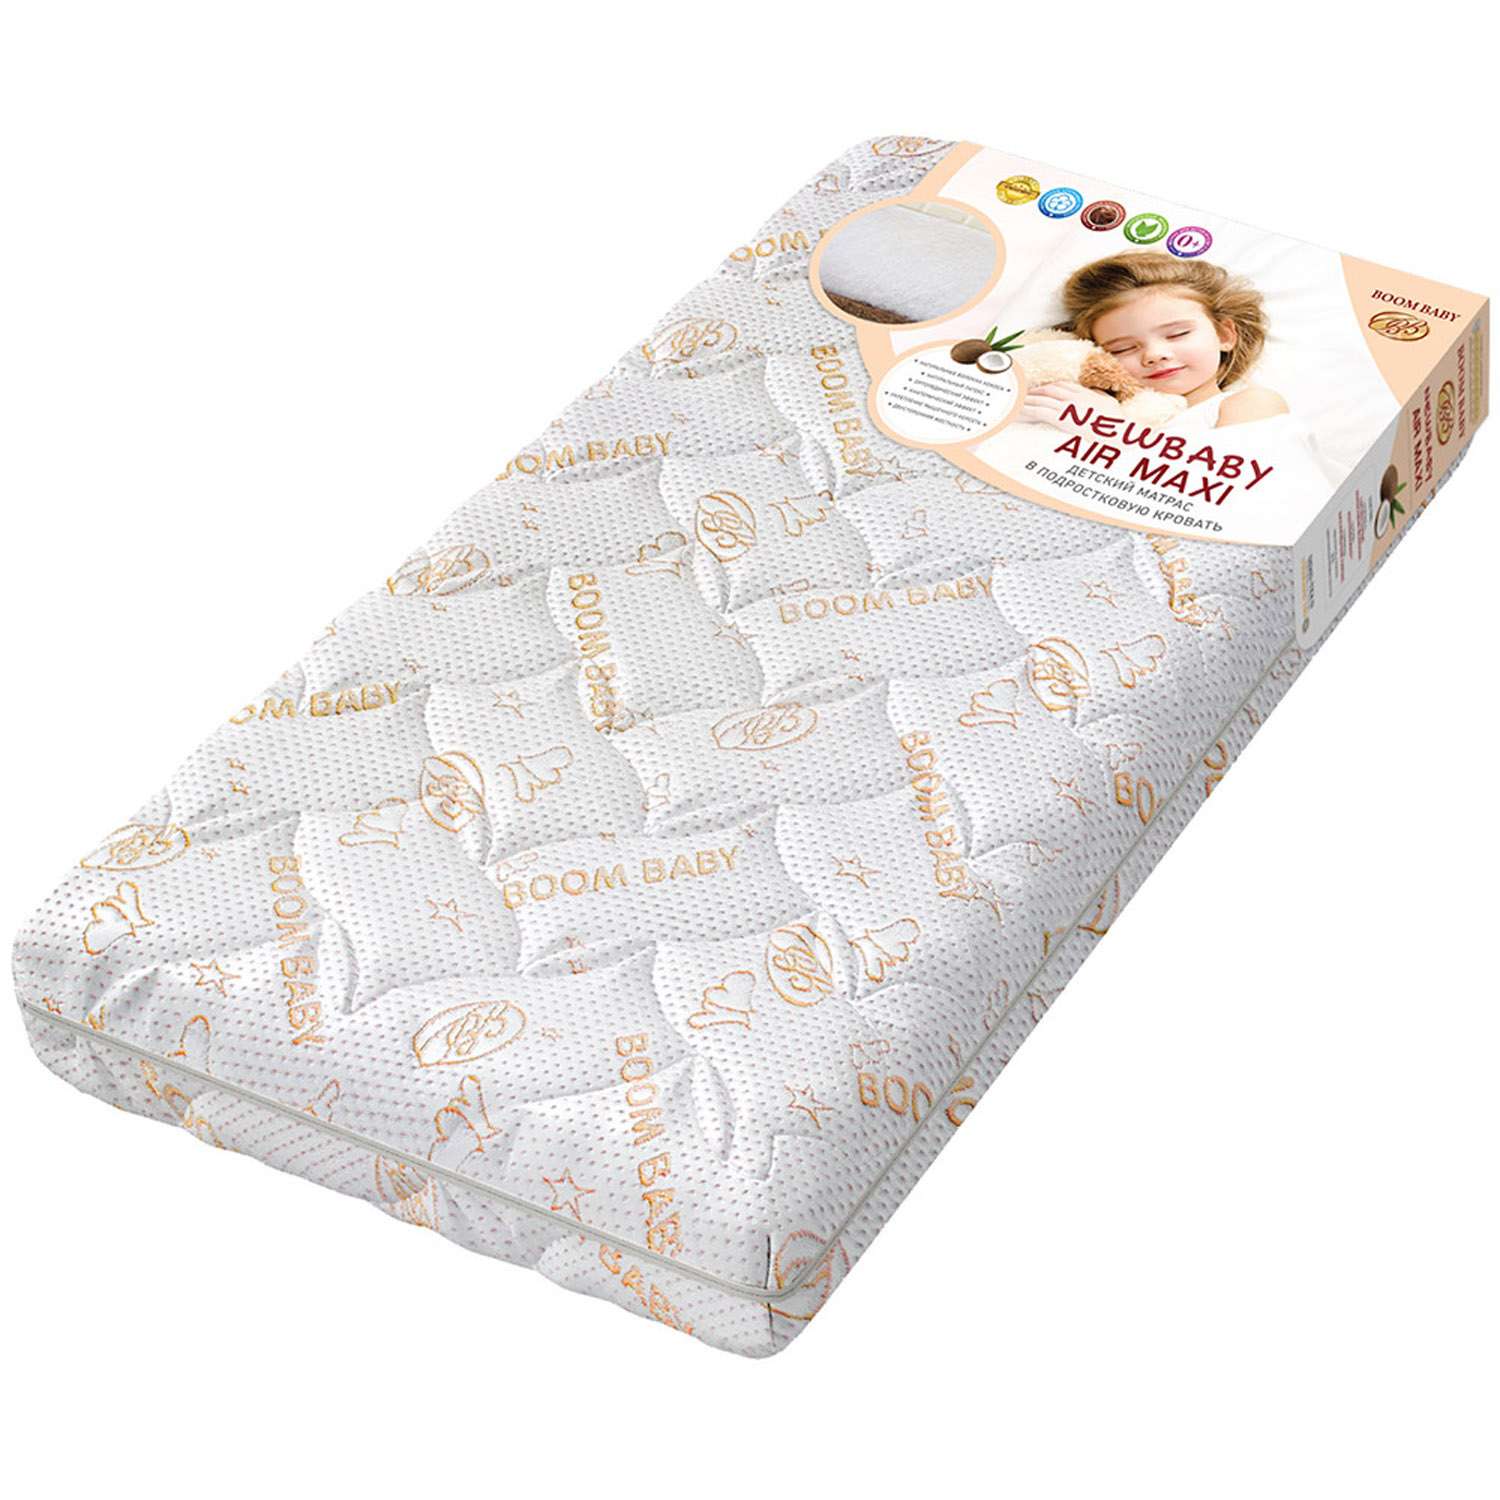 Матрас NВ AiR Maxi 140х70 см BOOM BABY для детской кроватки - фото 8